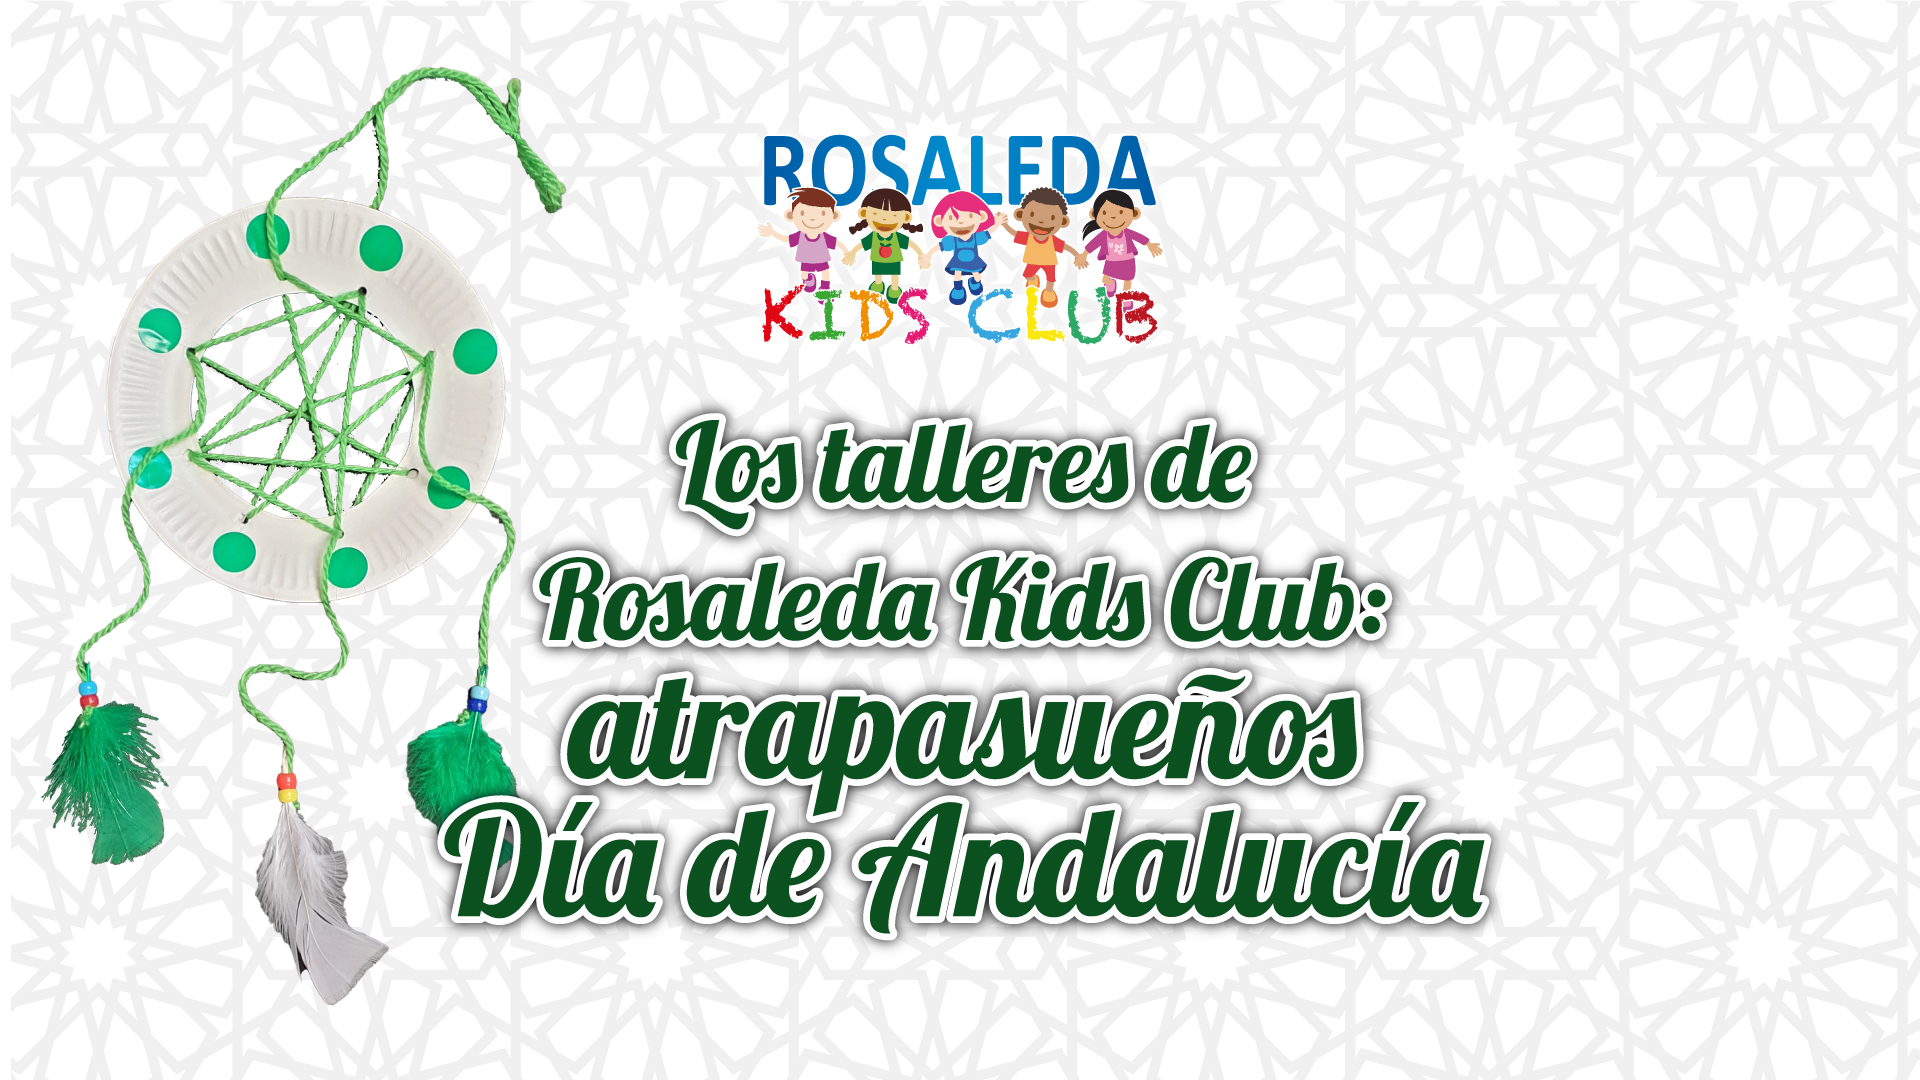 Rosaleda Kids Club: Día de Andalucía